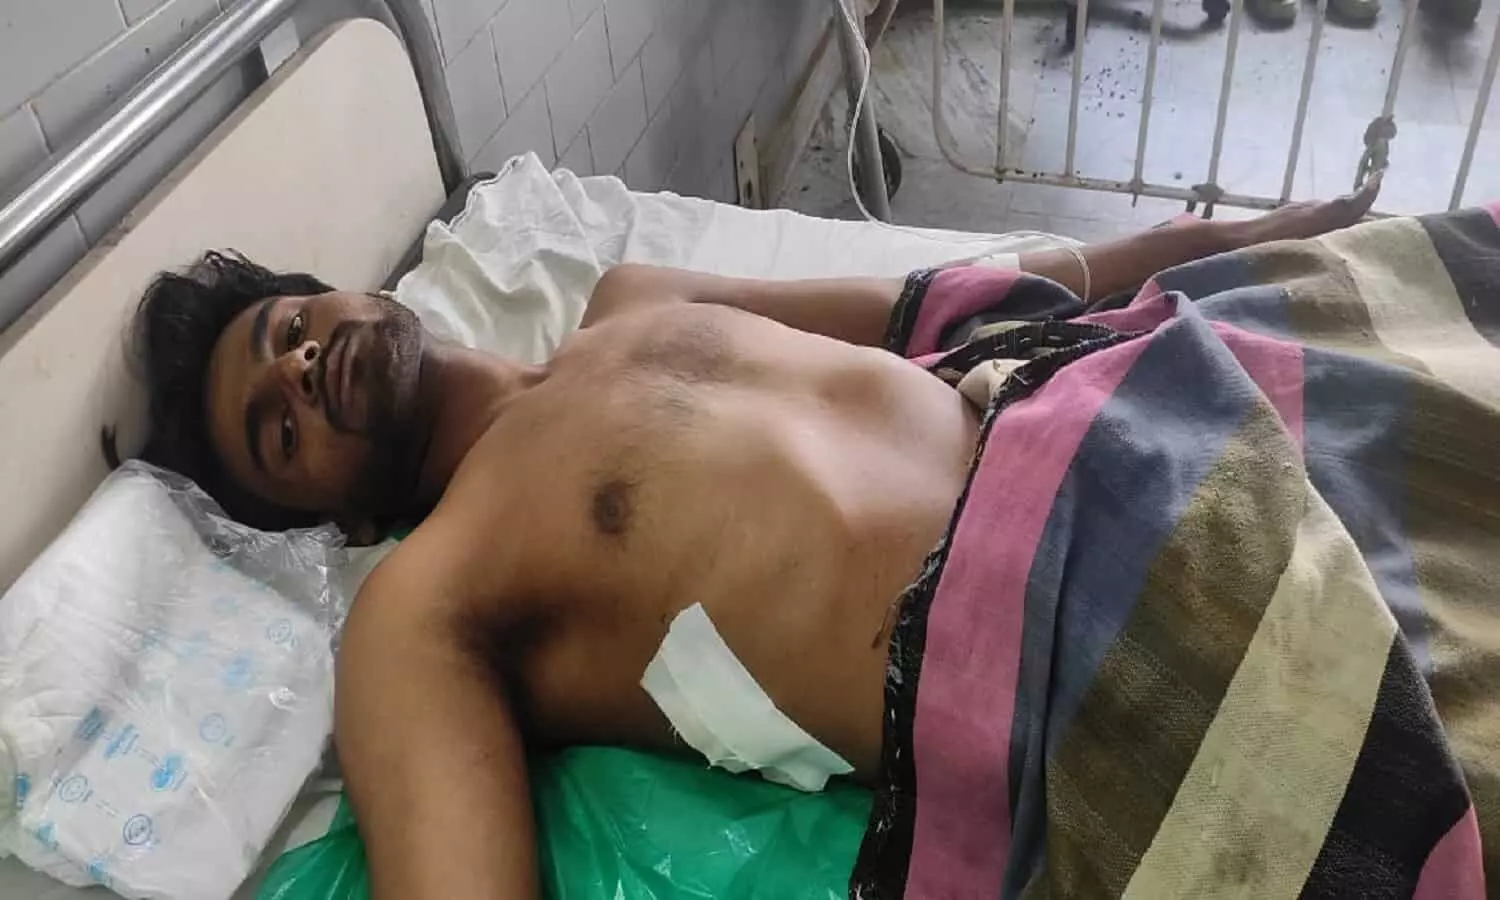 MP Satna News: दो पक्षों में चला चाकू, पिता-पुत्र सहित तीन घायल